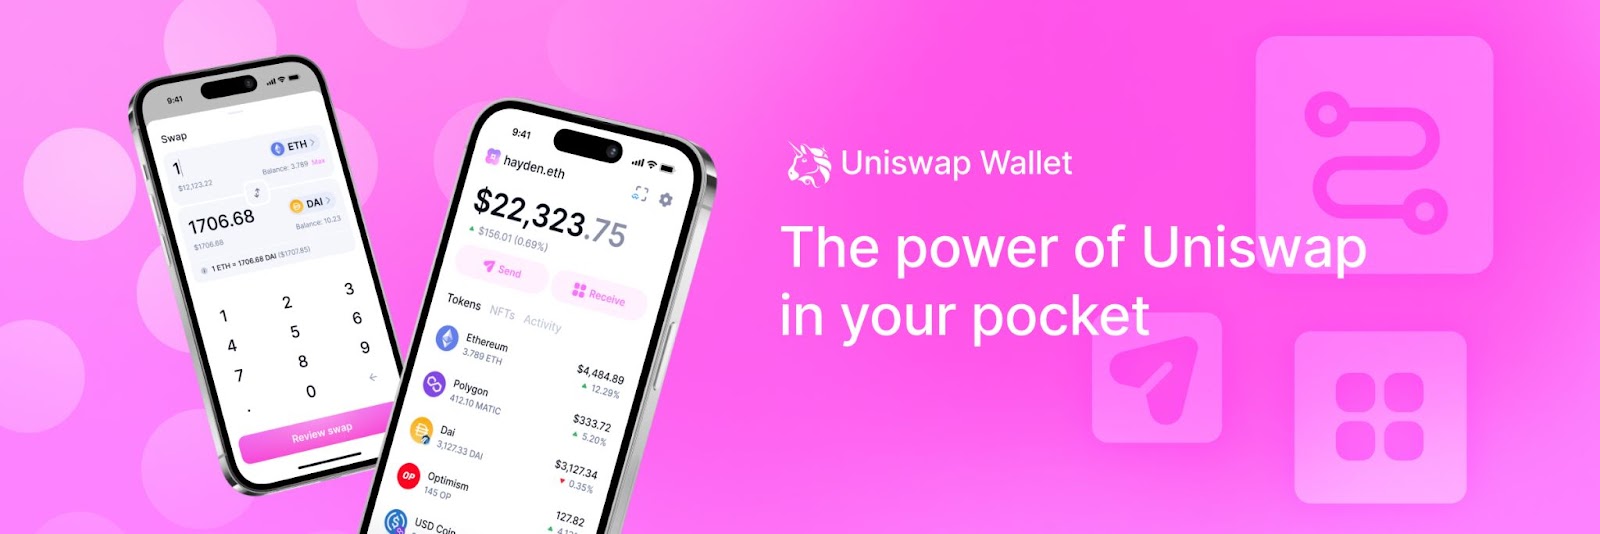 Le DEX Uniswap dévoile le lancement de son portefeuille crypto Uniswap Wallet.